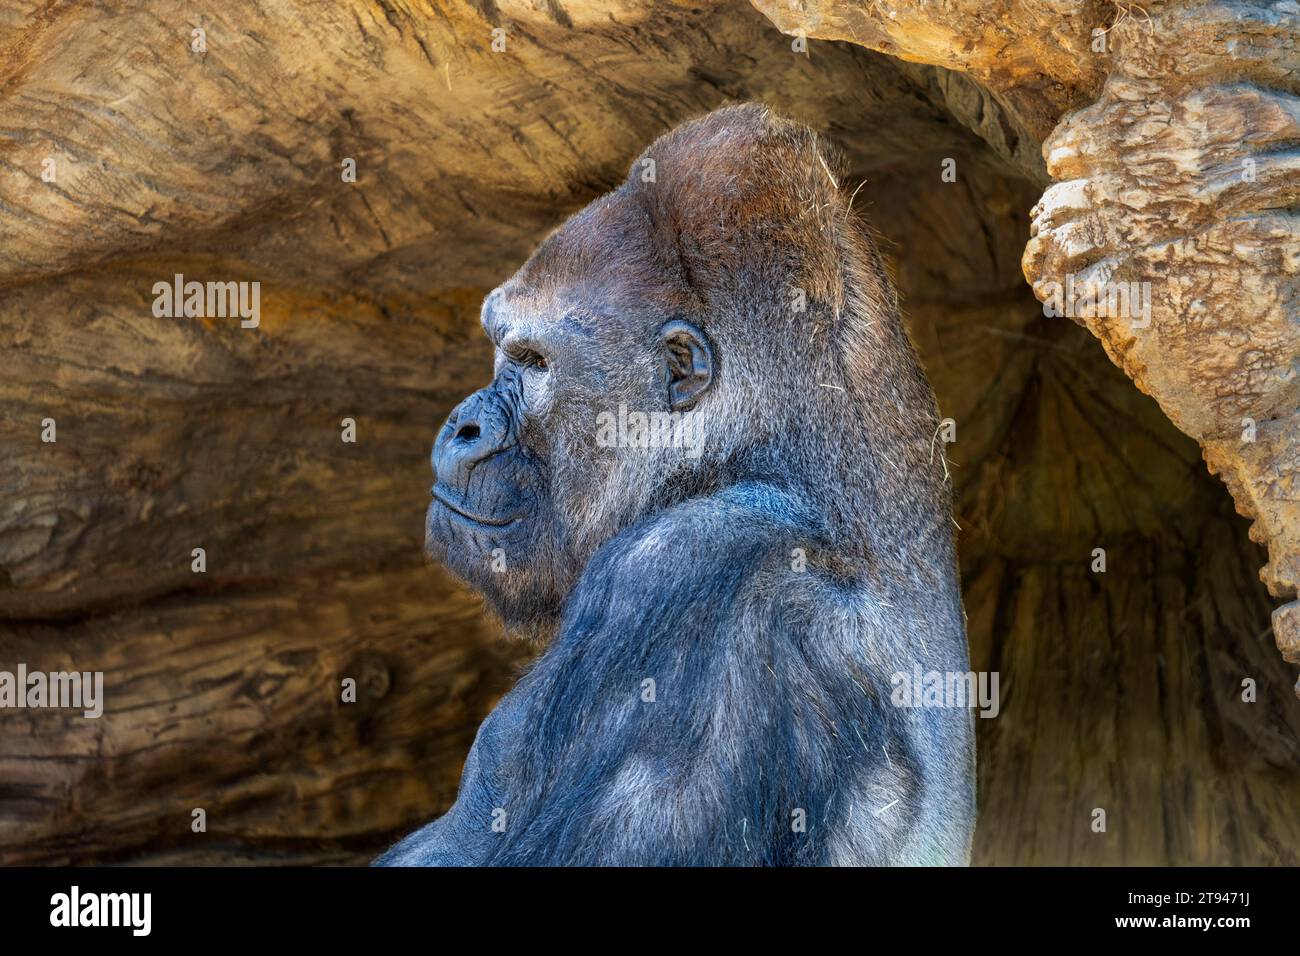 Porträt eines Silverback-Gorillas im westlichen Tiefland, der vor einer Höhle sitzt. Stockfoto